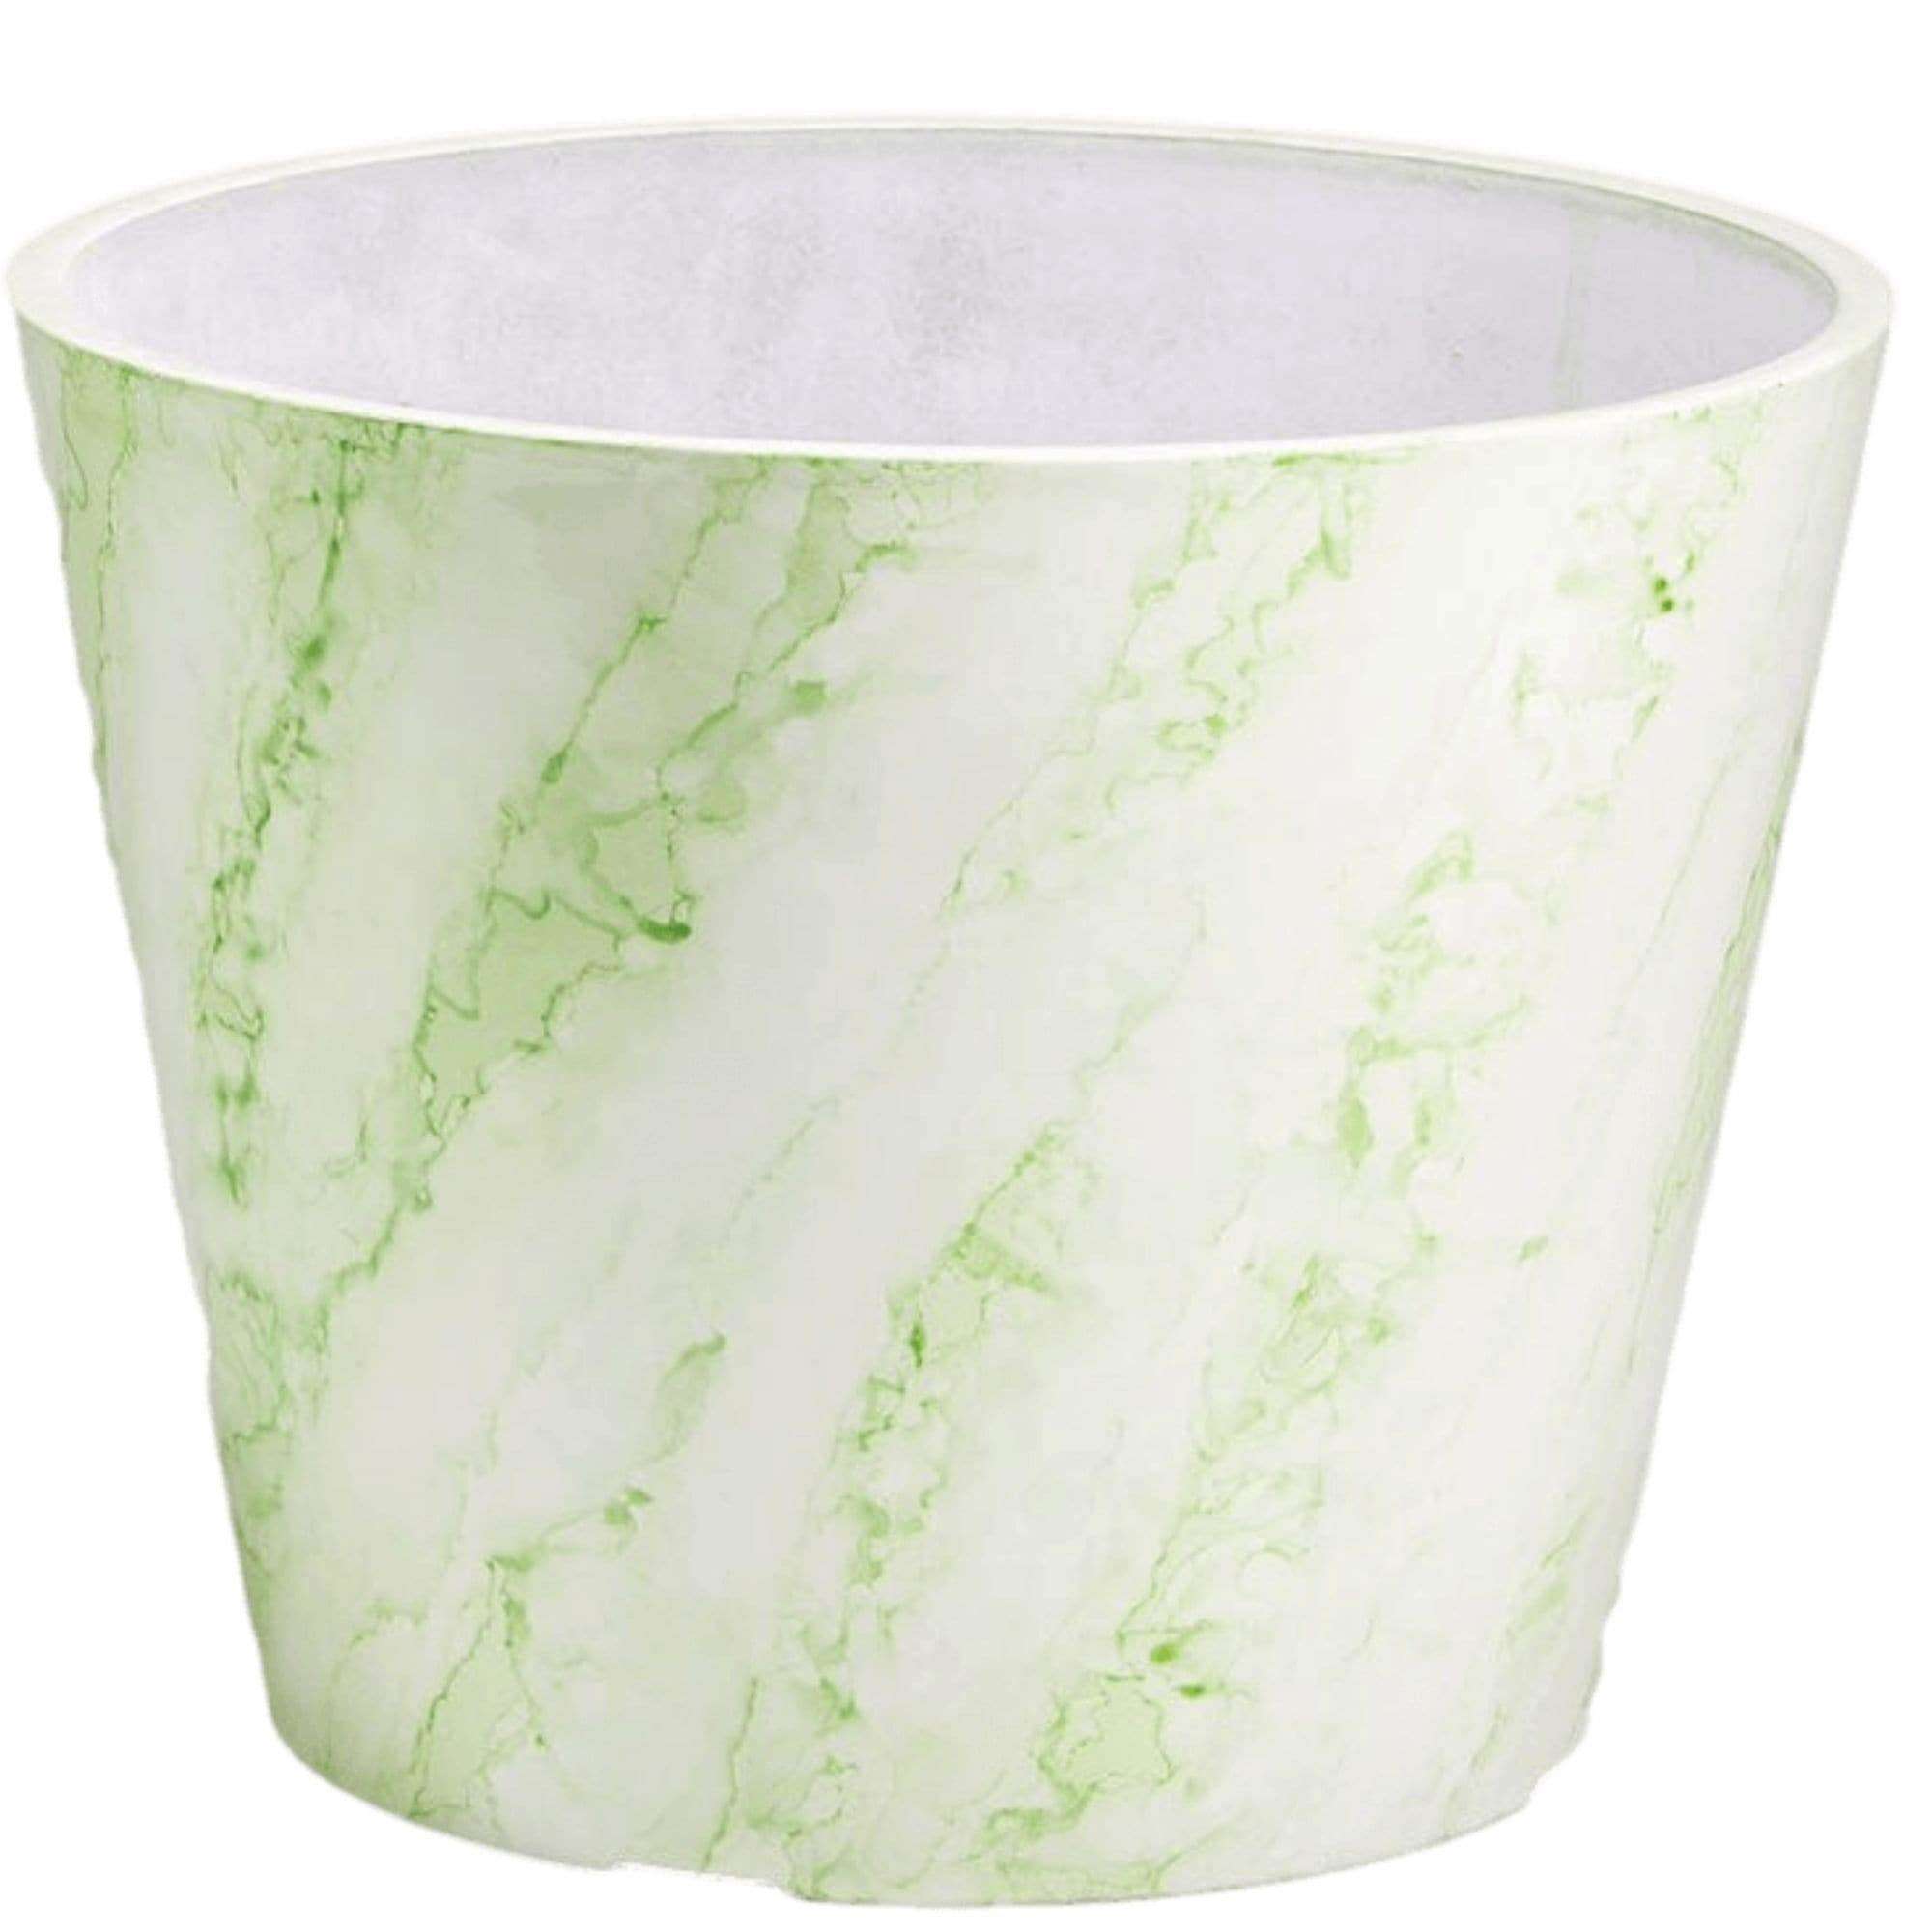 green-white-imitation-marble-pot-25cm-343834.jpg